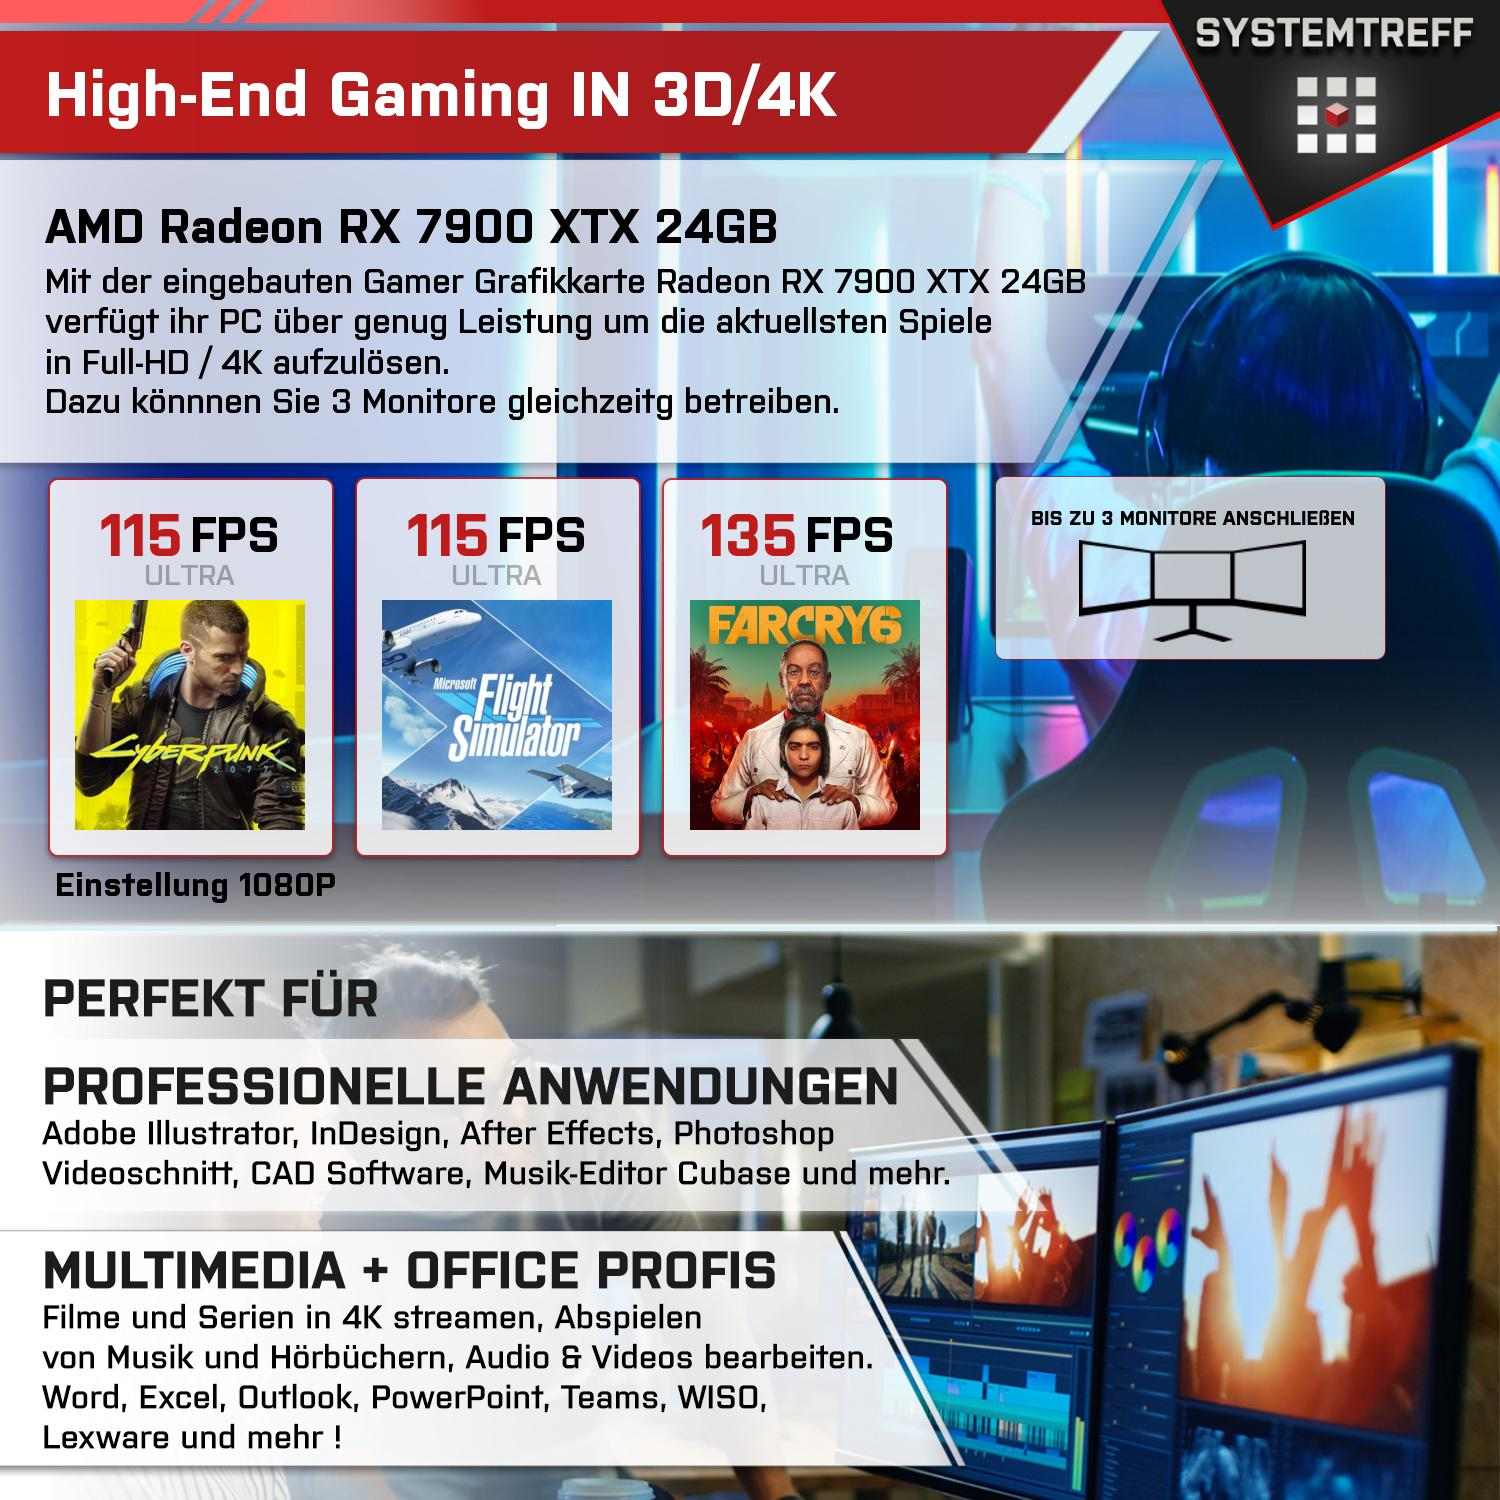 SYSTEMTREFF Gaming Komplett 2000 AMD RX GB 32 Radeon mSSD, GB Ryzen PC GB mit AMD 7900, RAM, 24 7900 XTX 7900 GDDR6, 24GB Prozessor, 9 Komplett